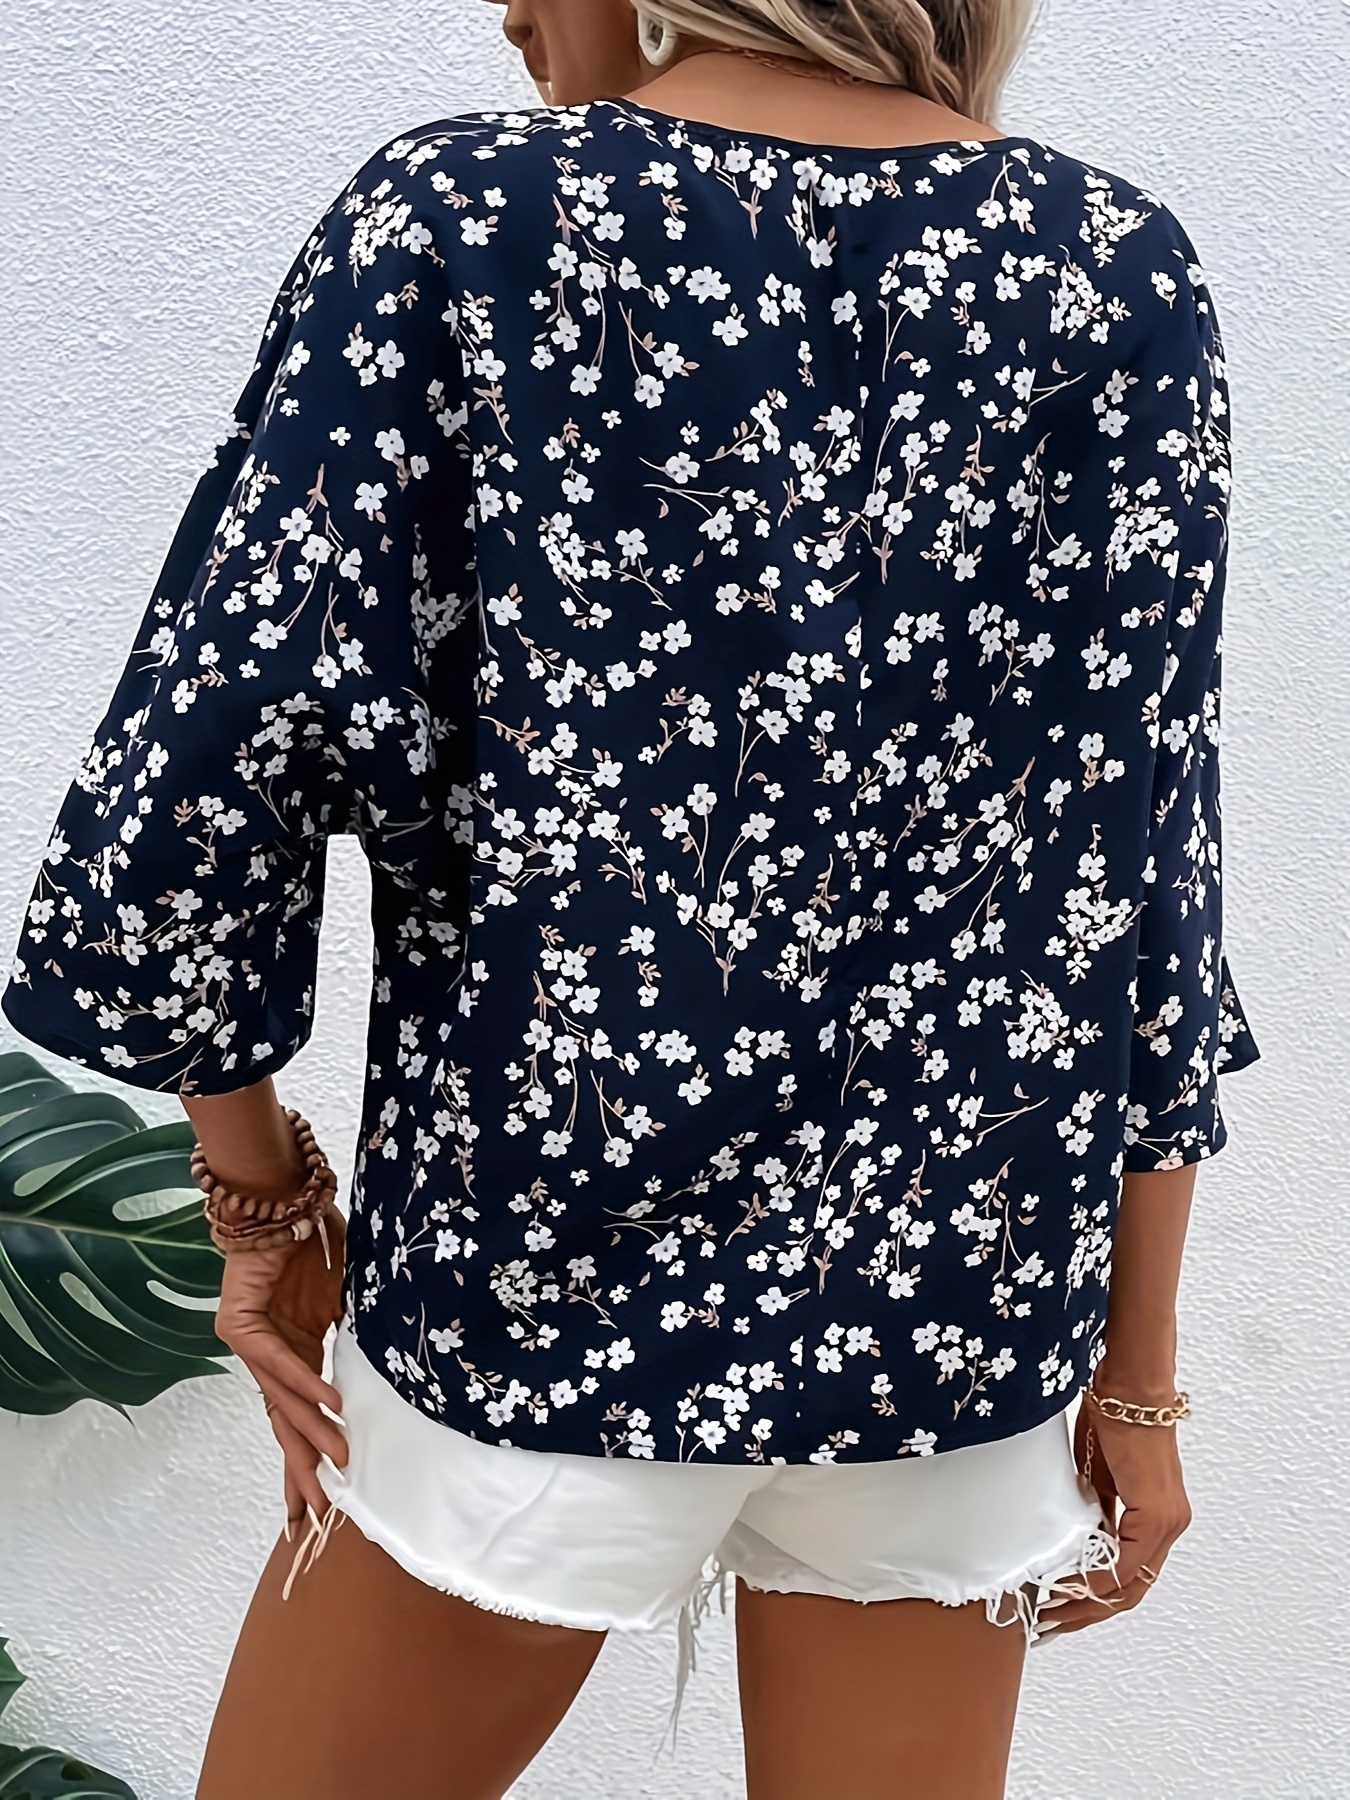 Блузка с V-образным вырезом с цветочным принтом, повседневная блузка с рукавами 3/4 на весну и осень, женская одежда